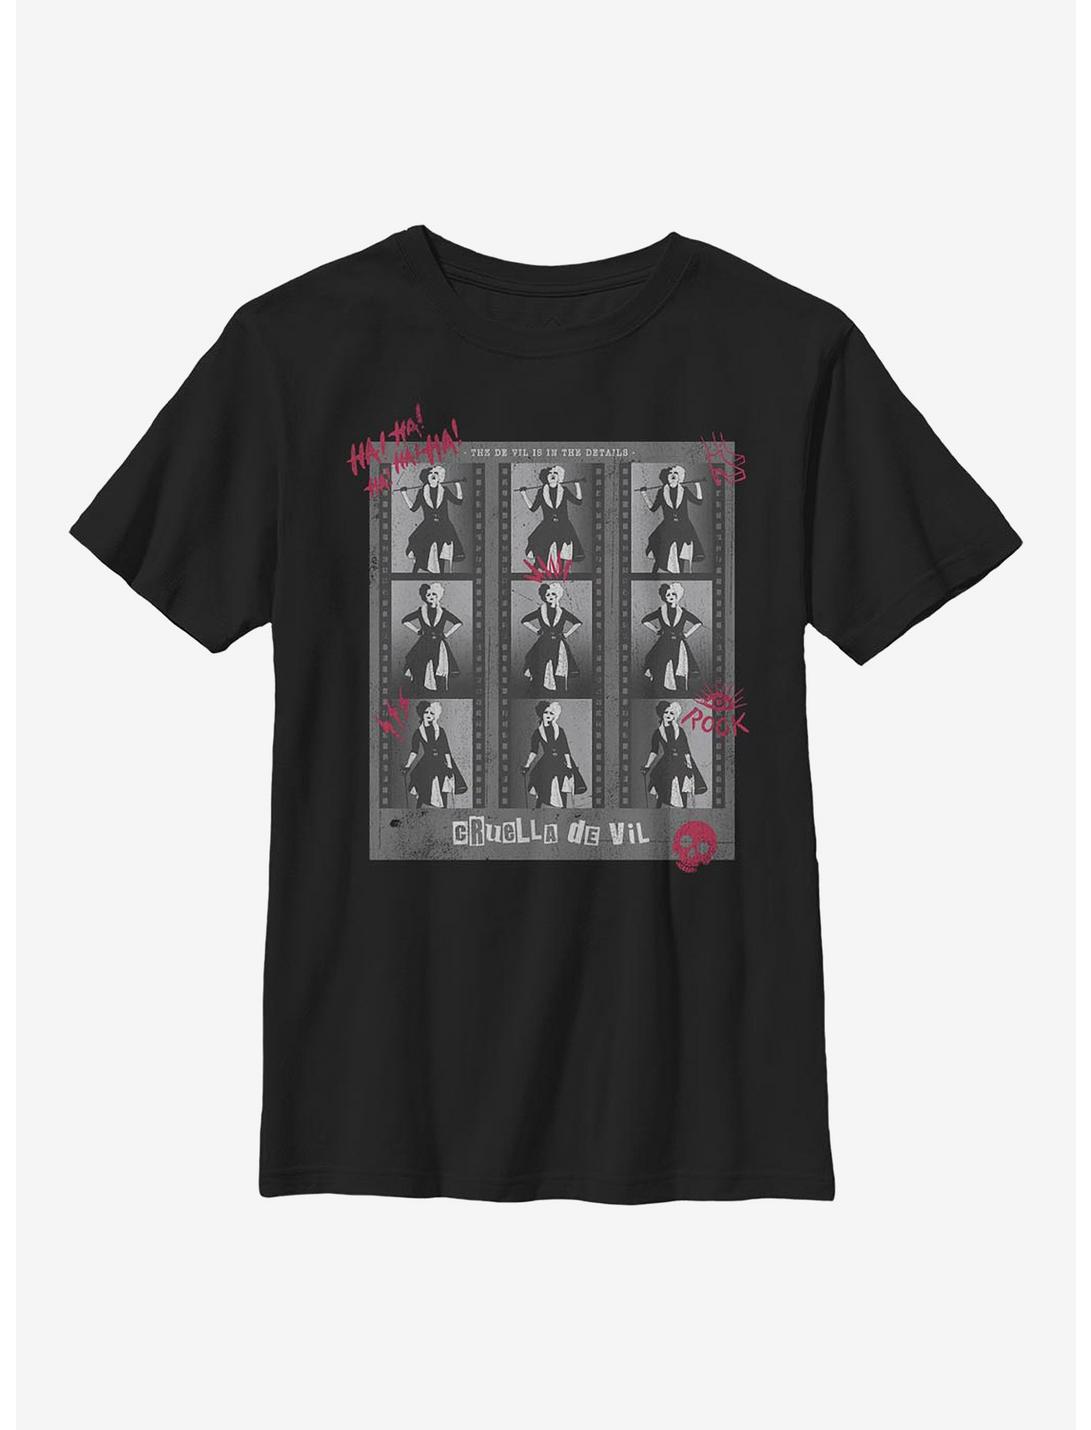 Disney Cruella Negatives Youth T-Shirt, BLACK, hi-res